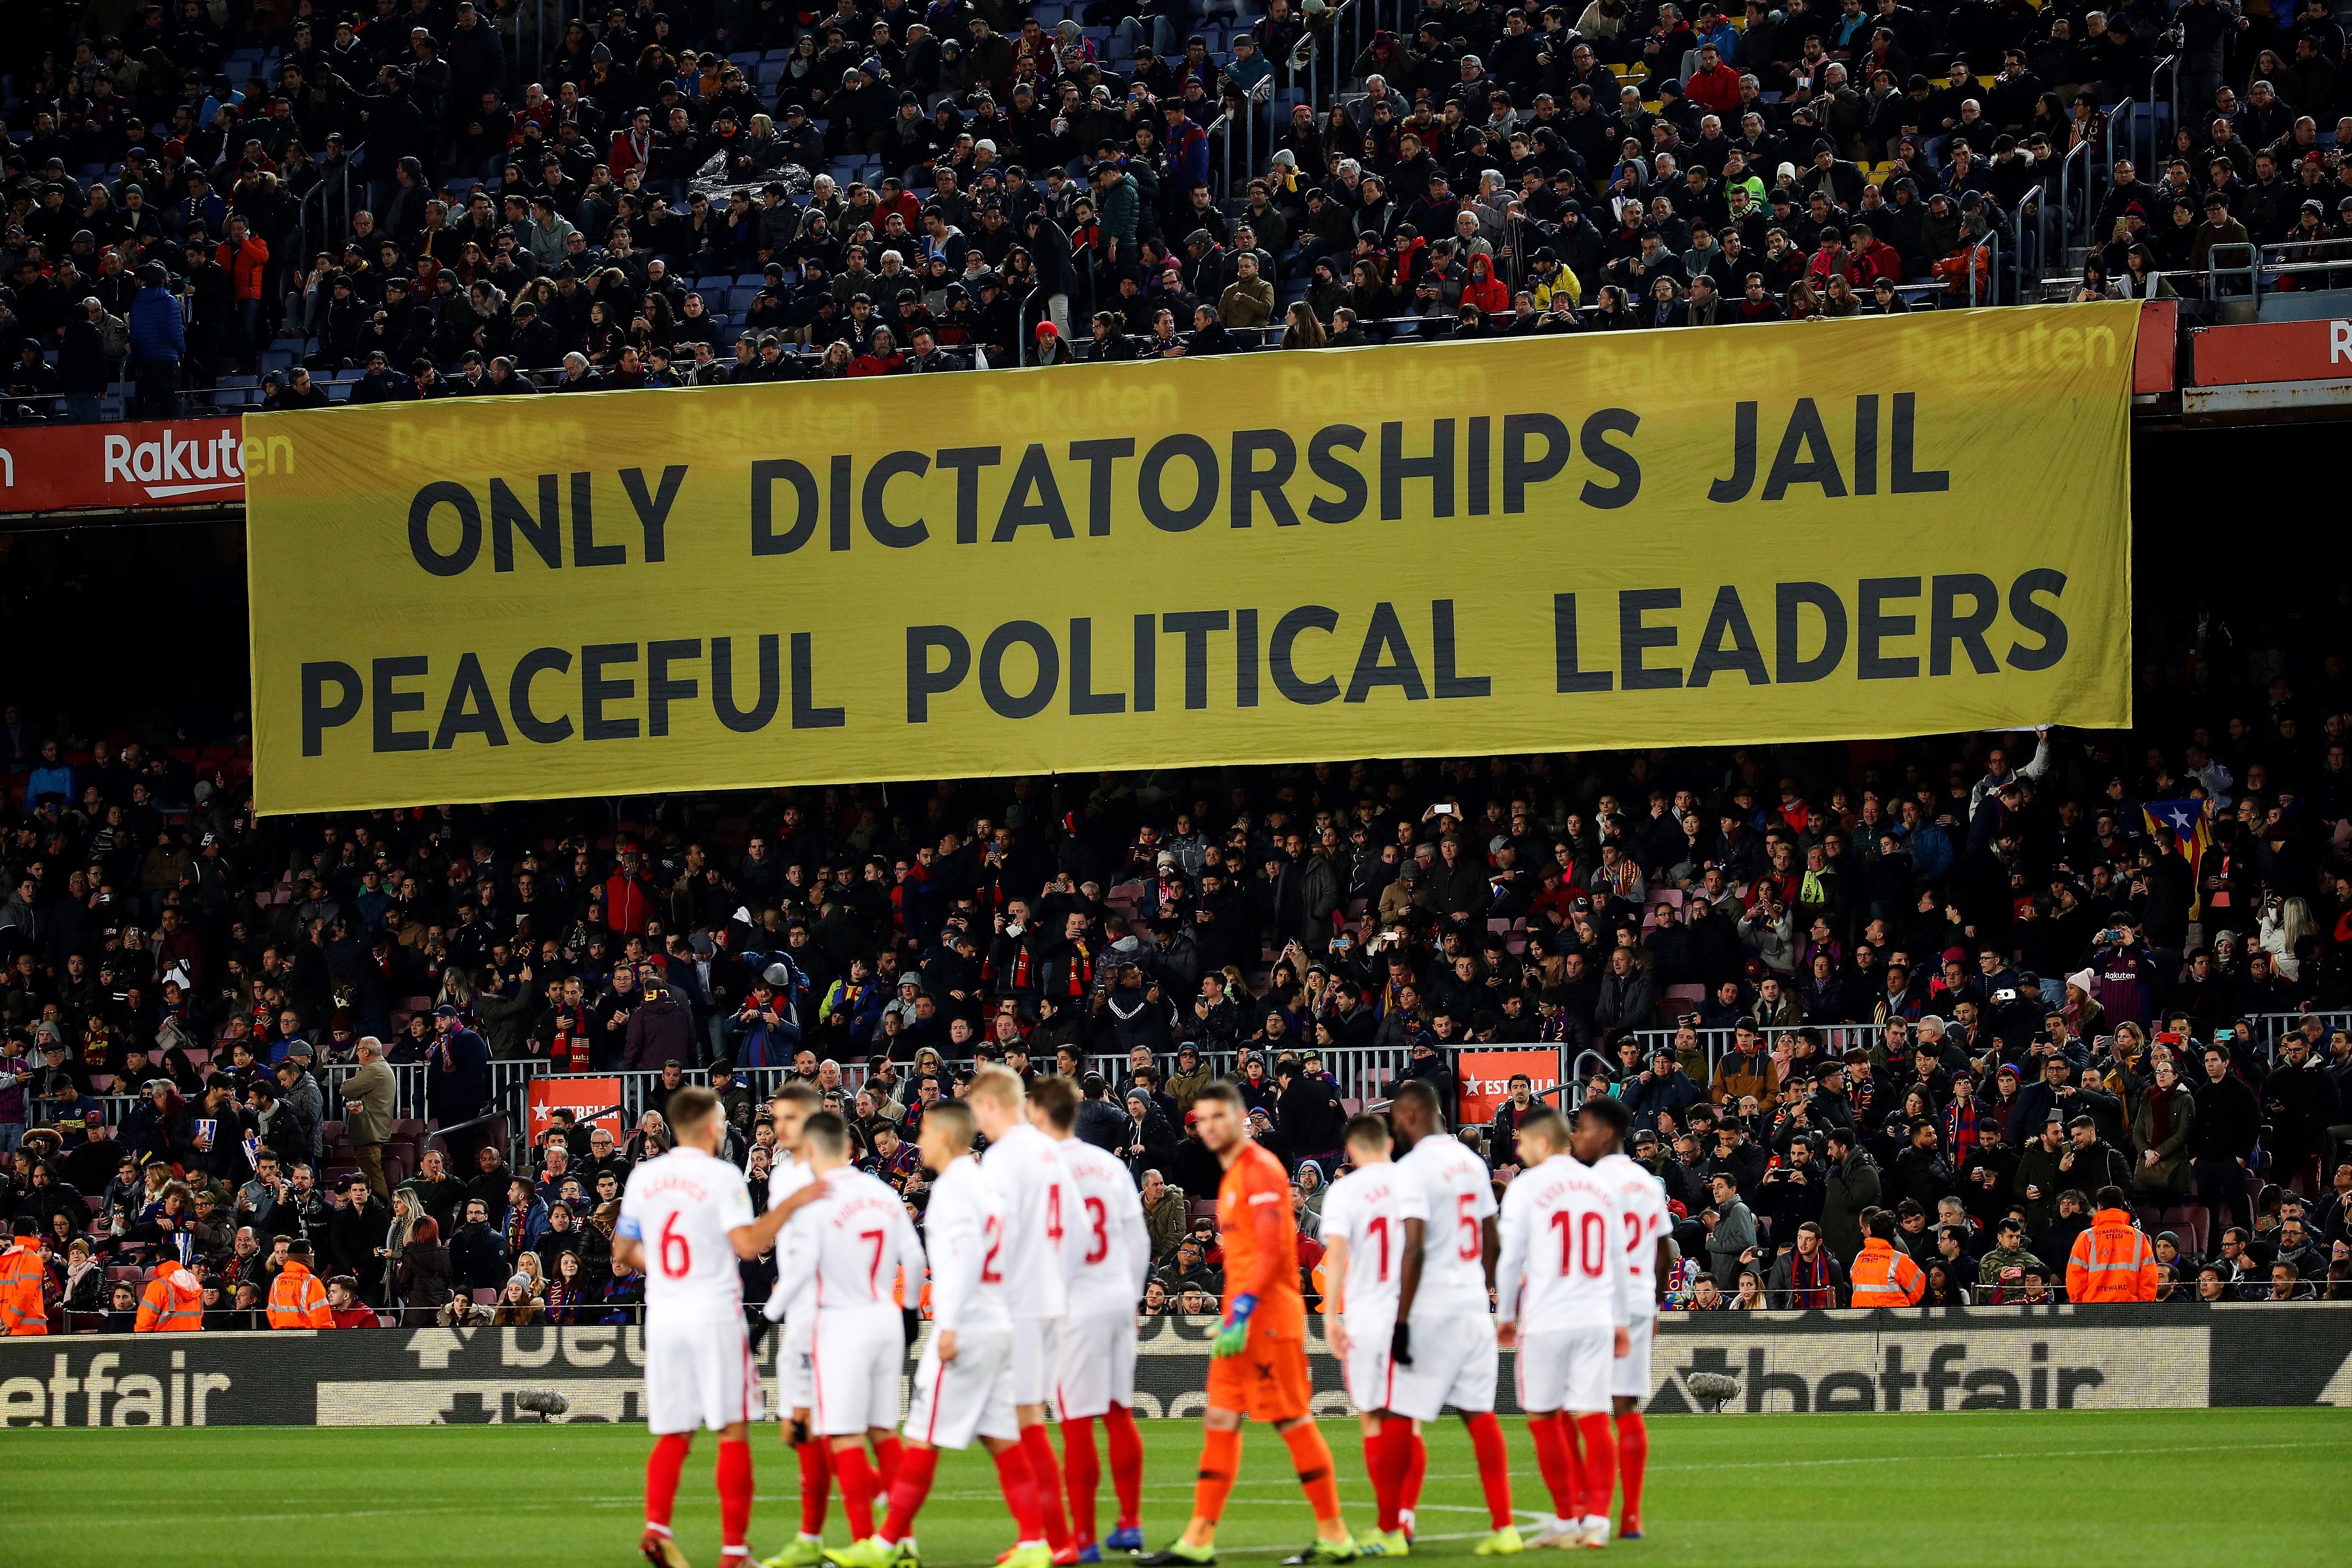 La polèmica pancarta del Camp Nou: "Espanya és una dictadura"